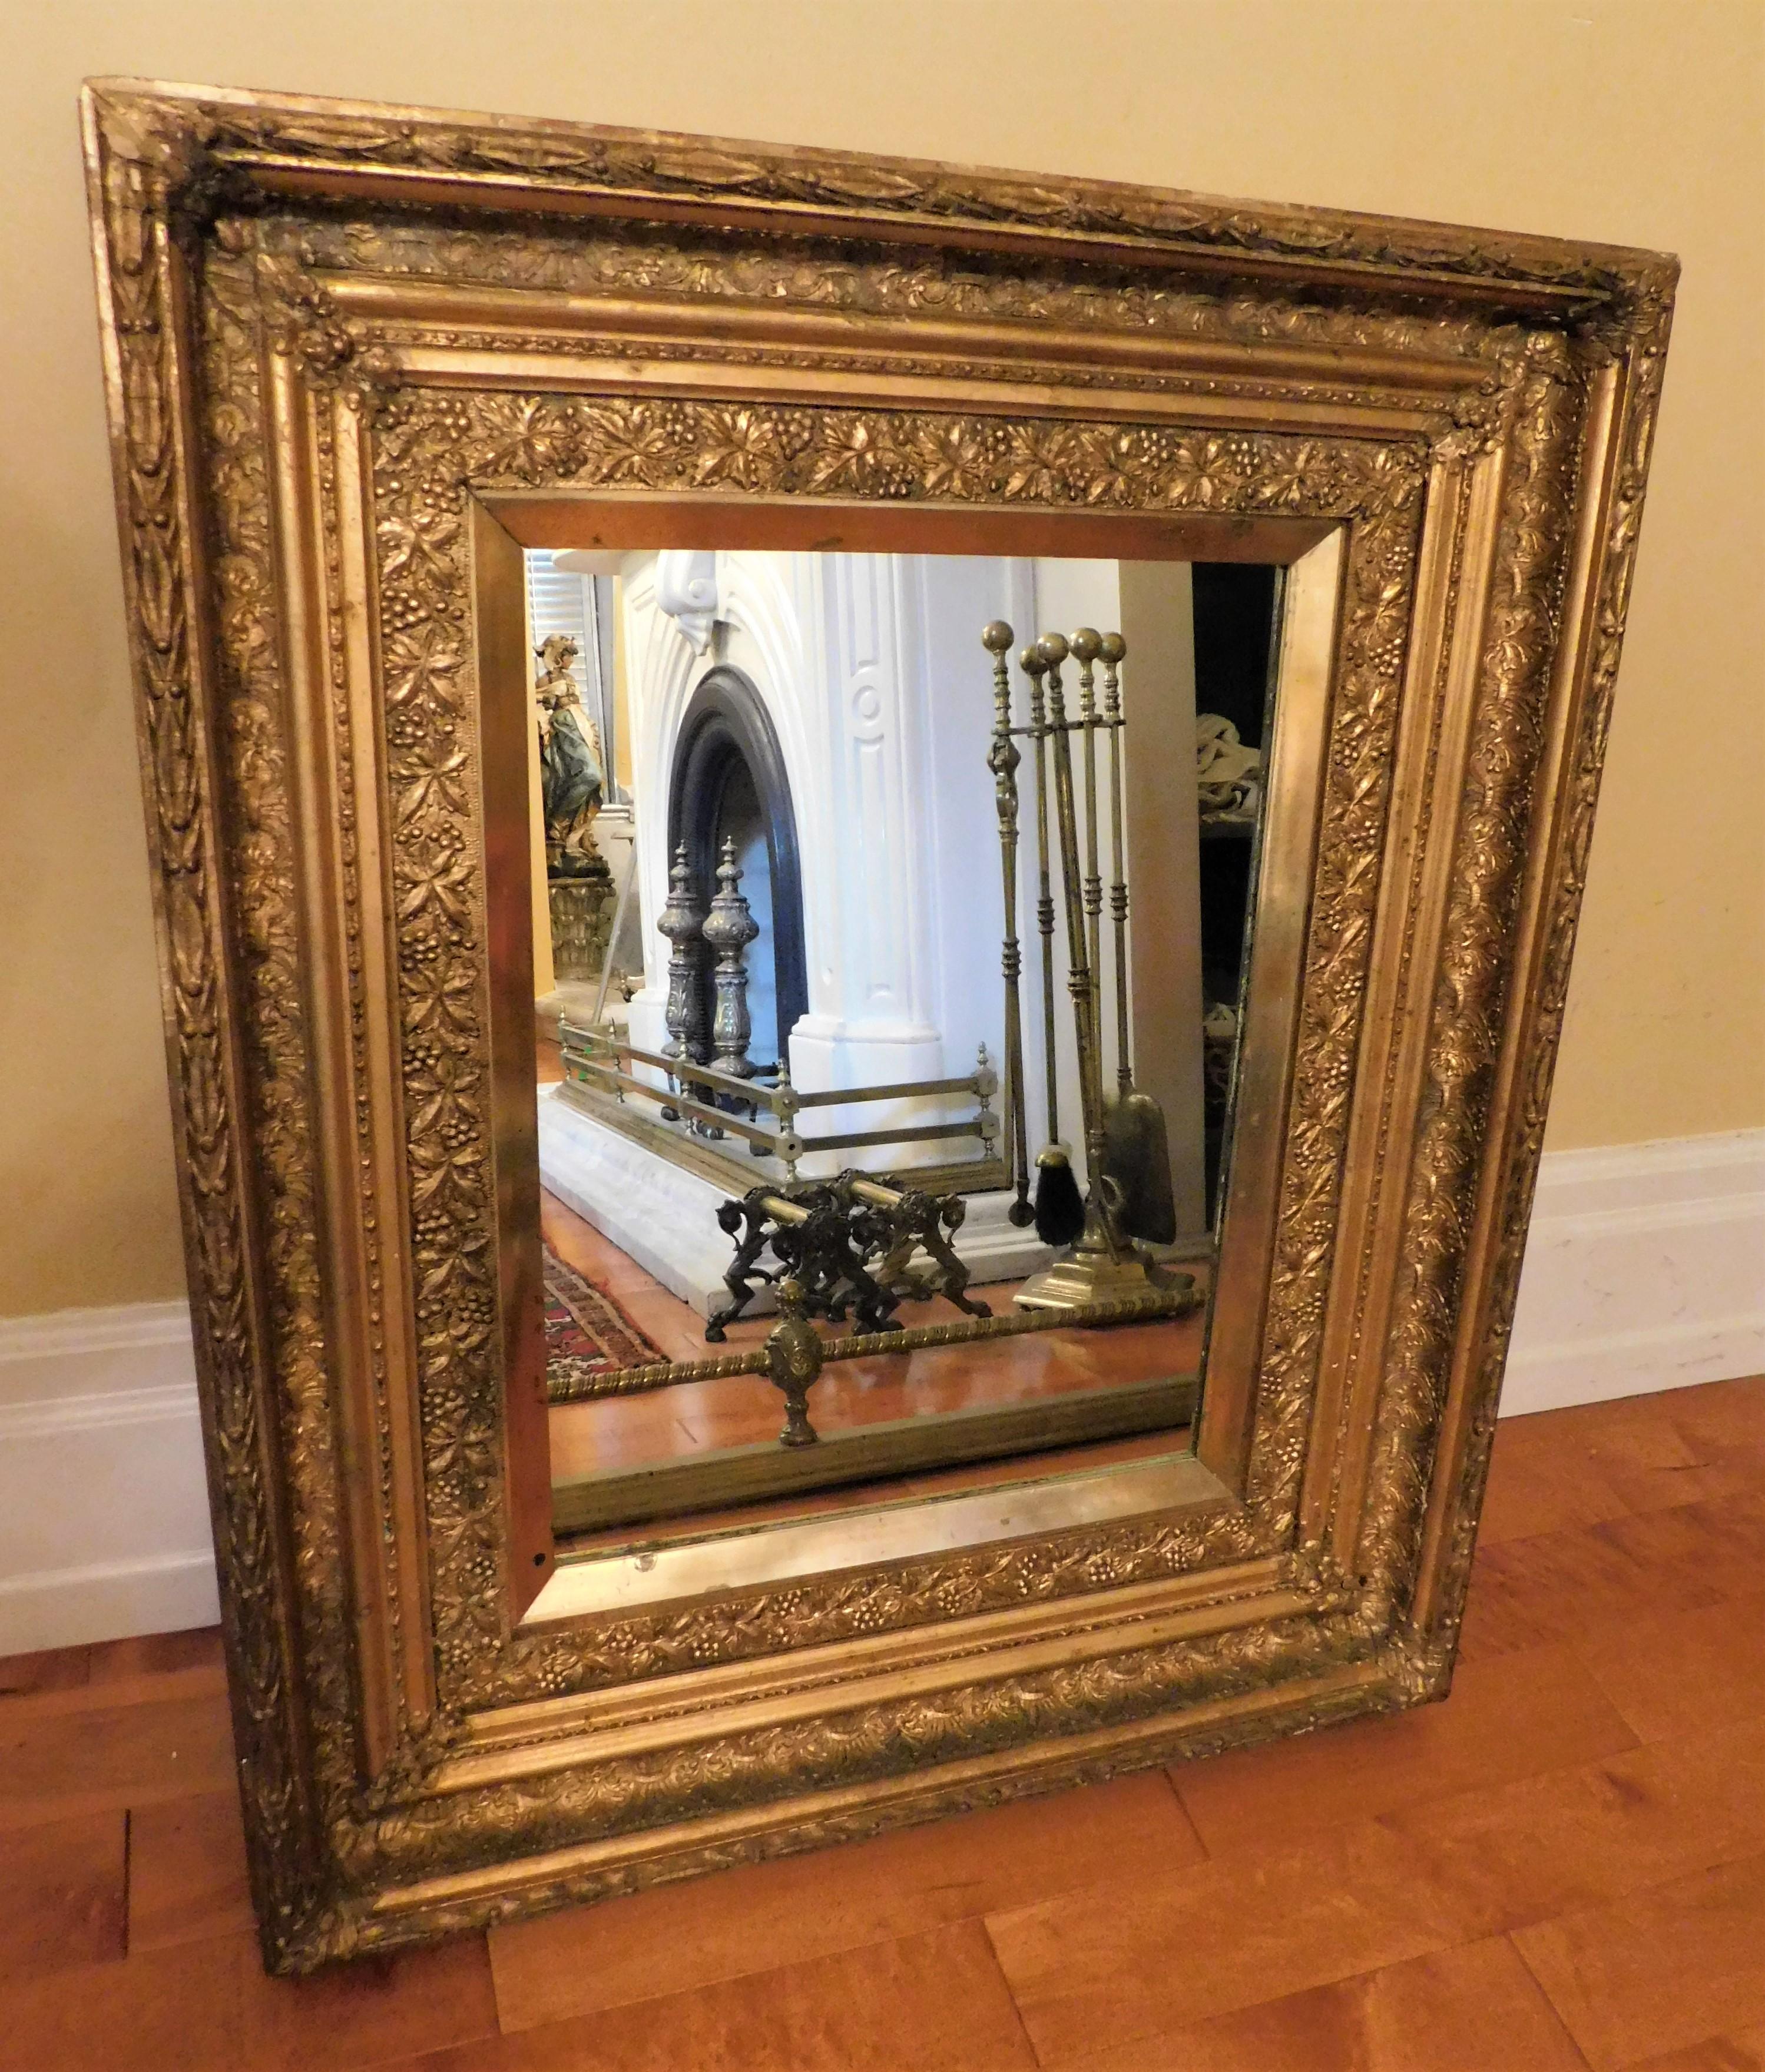 Belgien in einem goldgerahmten Spiegel im französischen Stil, um 1910. Schöner Spiegel, der an einer Wand oder über einem Kamin, auf einem Kaminsims verwendet werden kann... Oder der Rahmen könnte für ein Gemälde oder ein Kunstwerk verwendet werden.